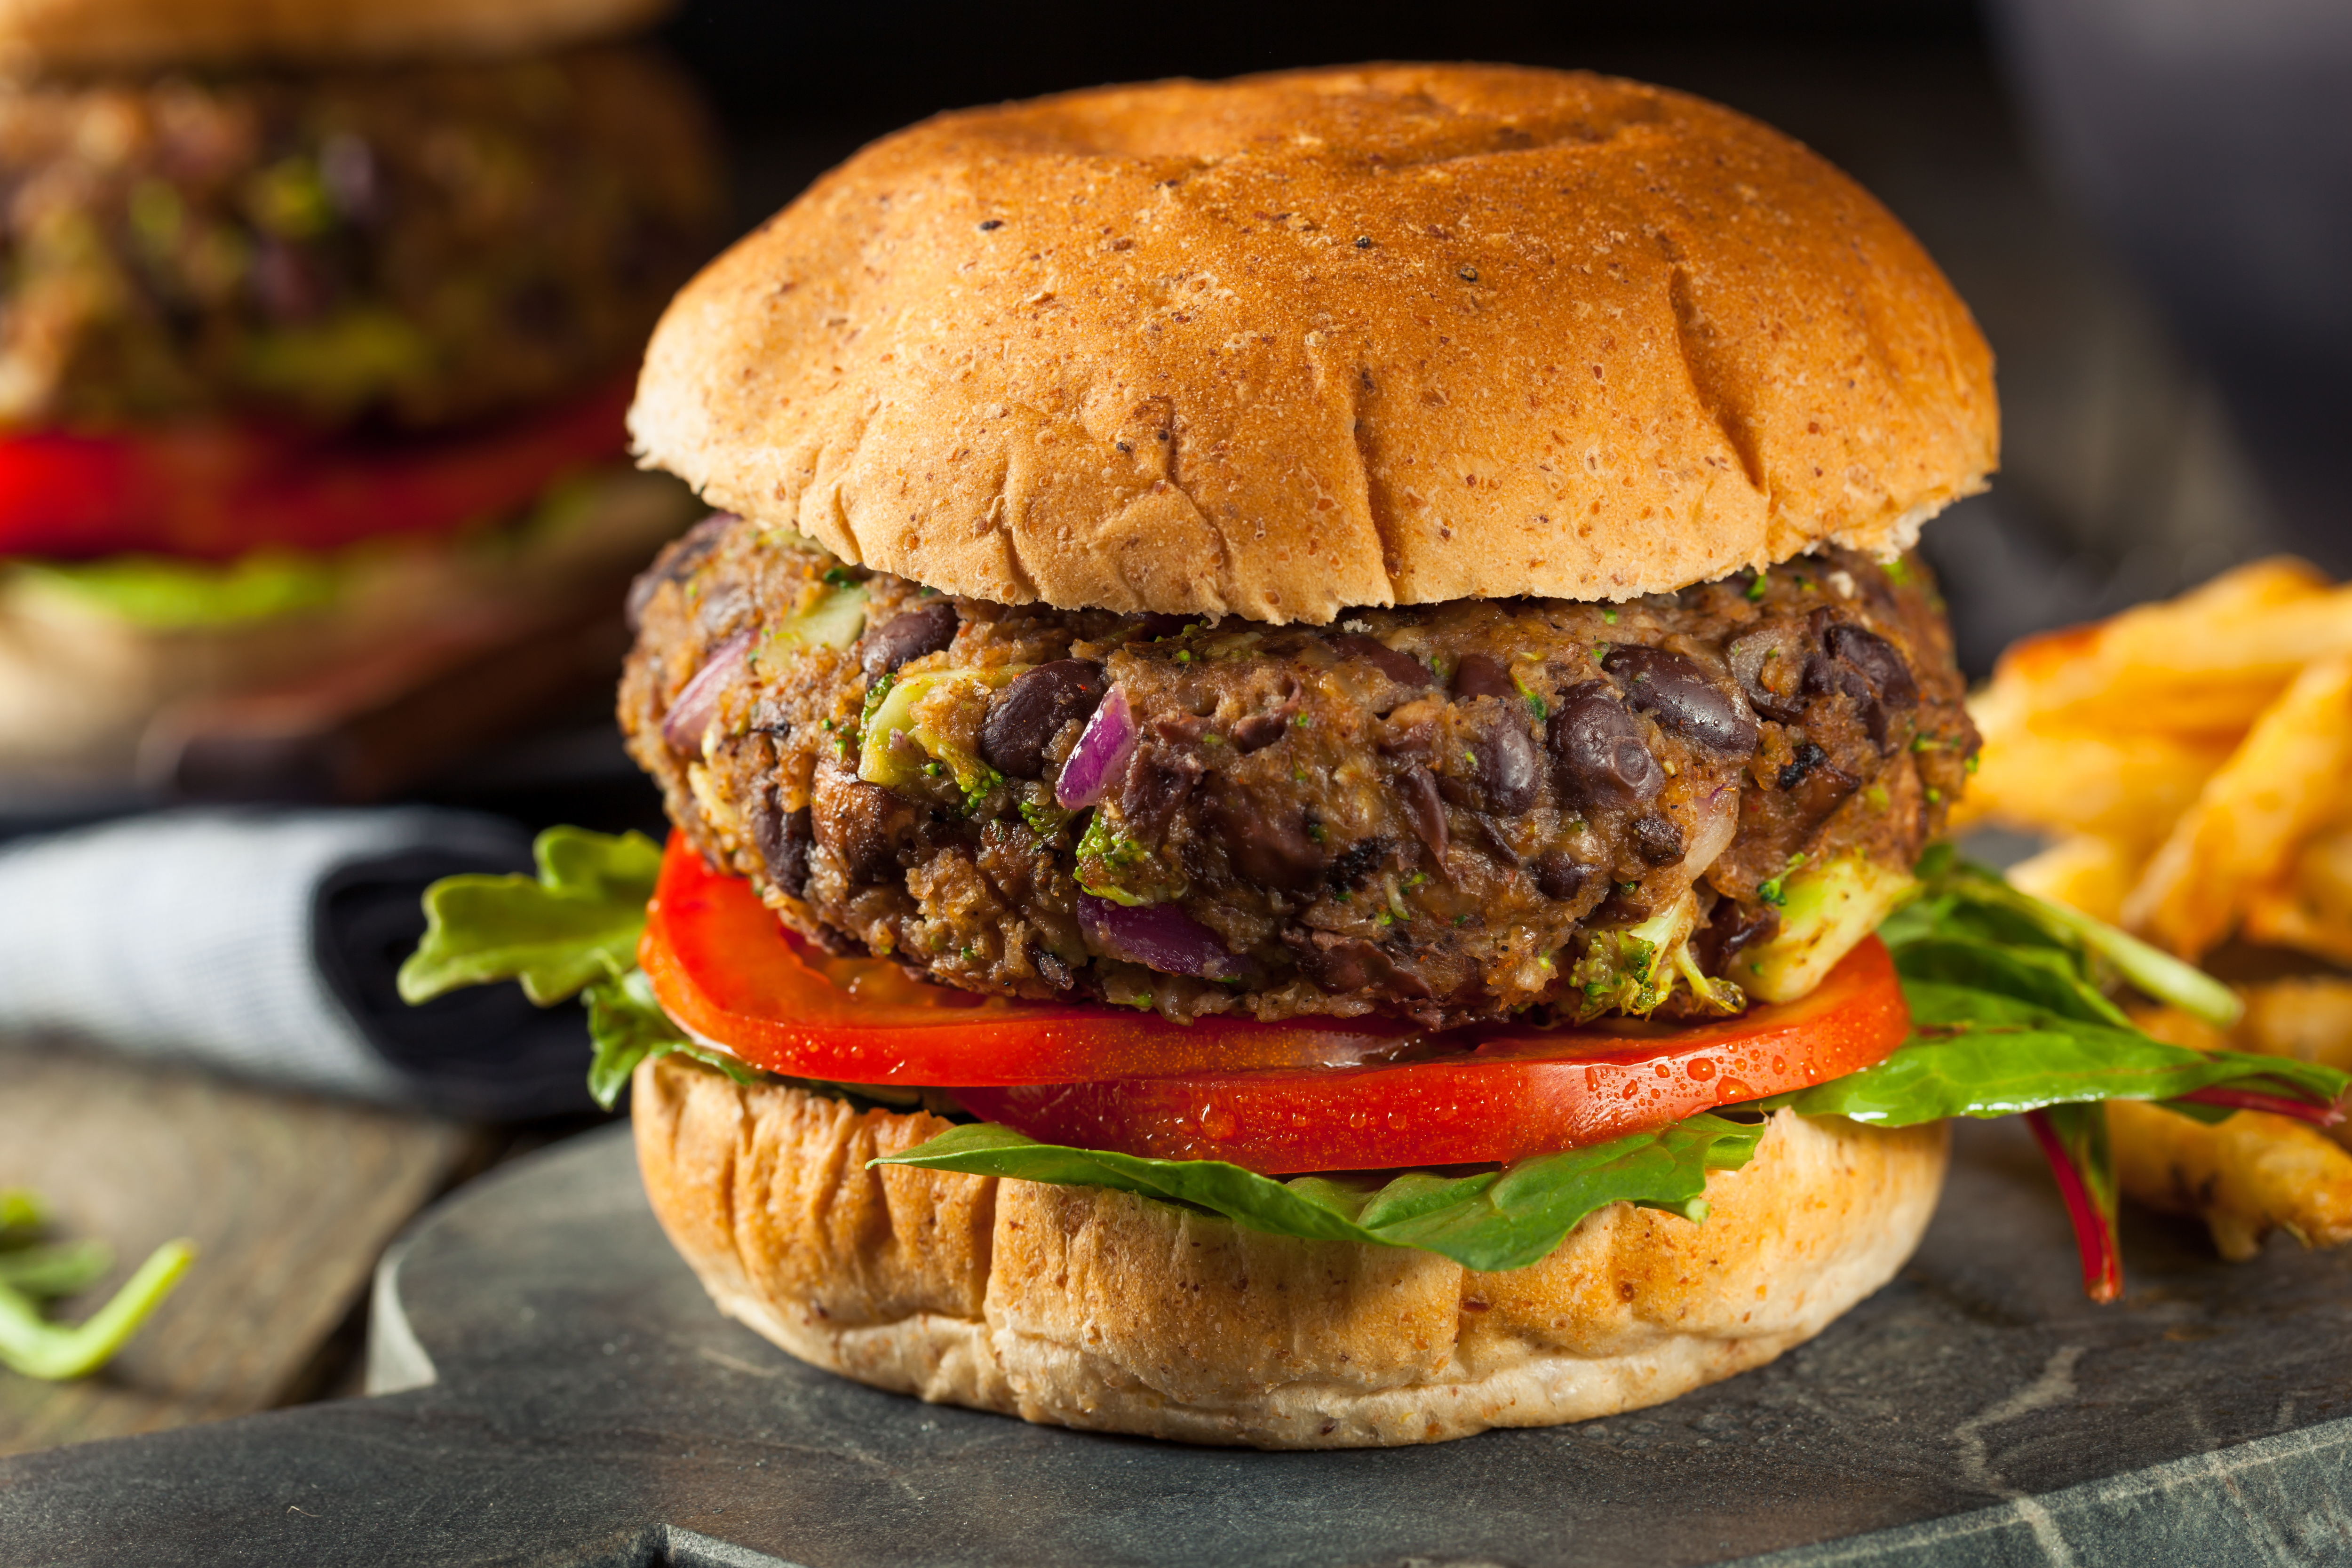 The “Full House” Vegan Burger